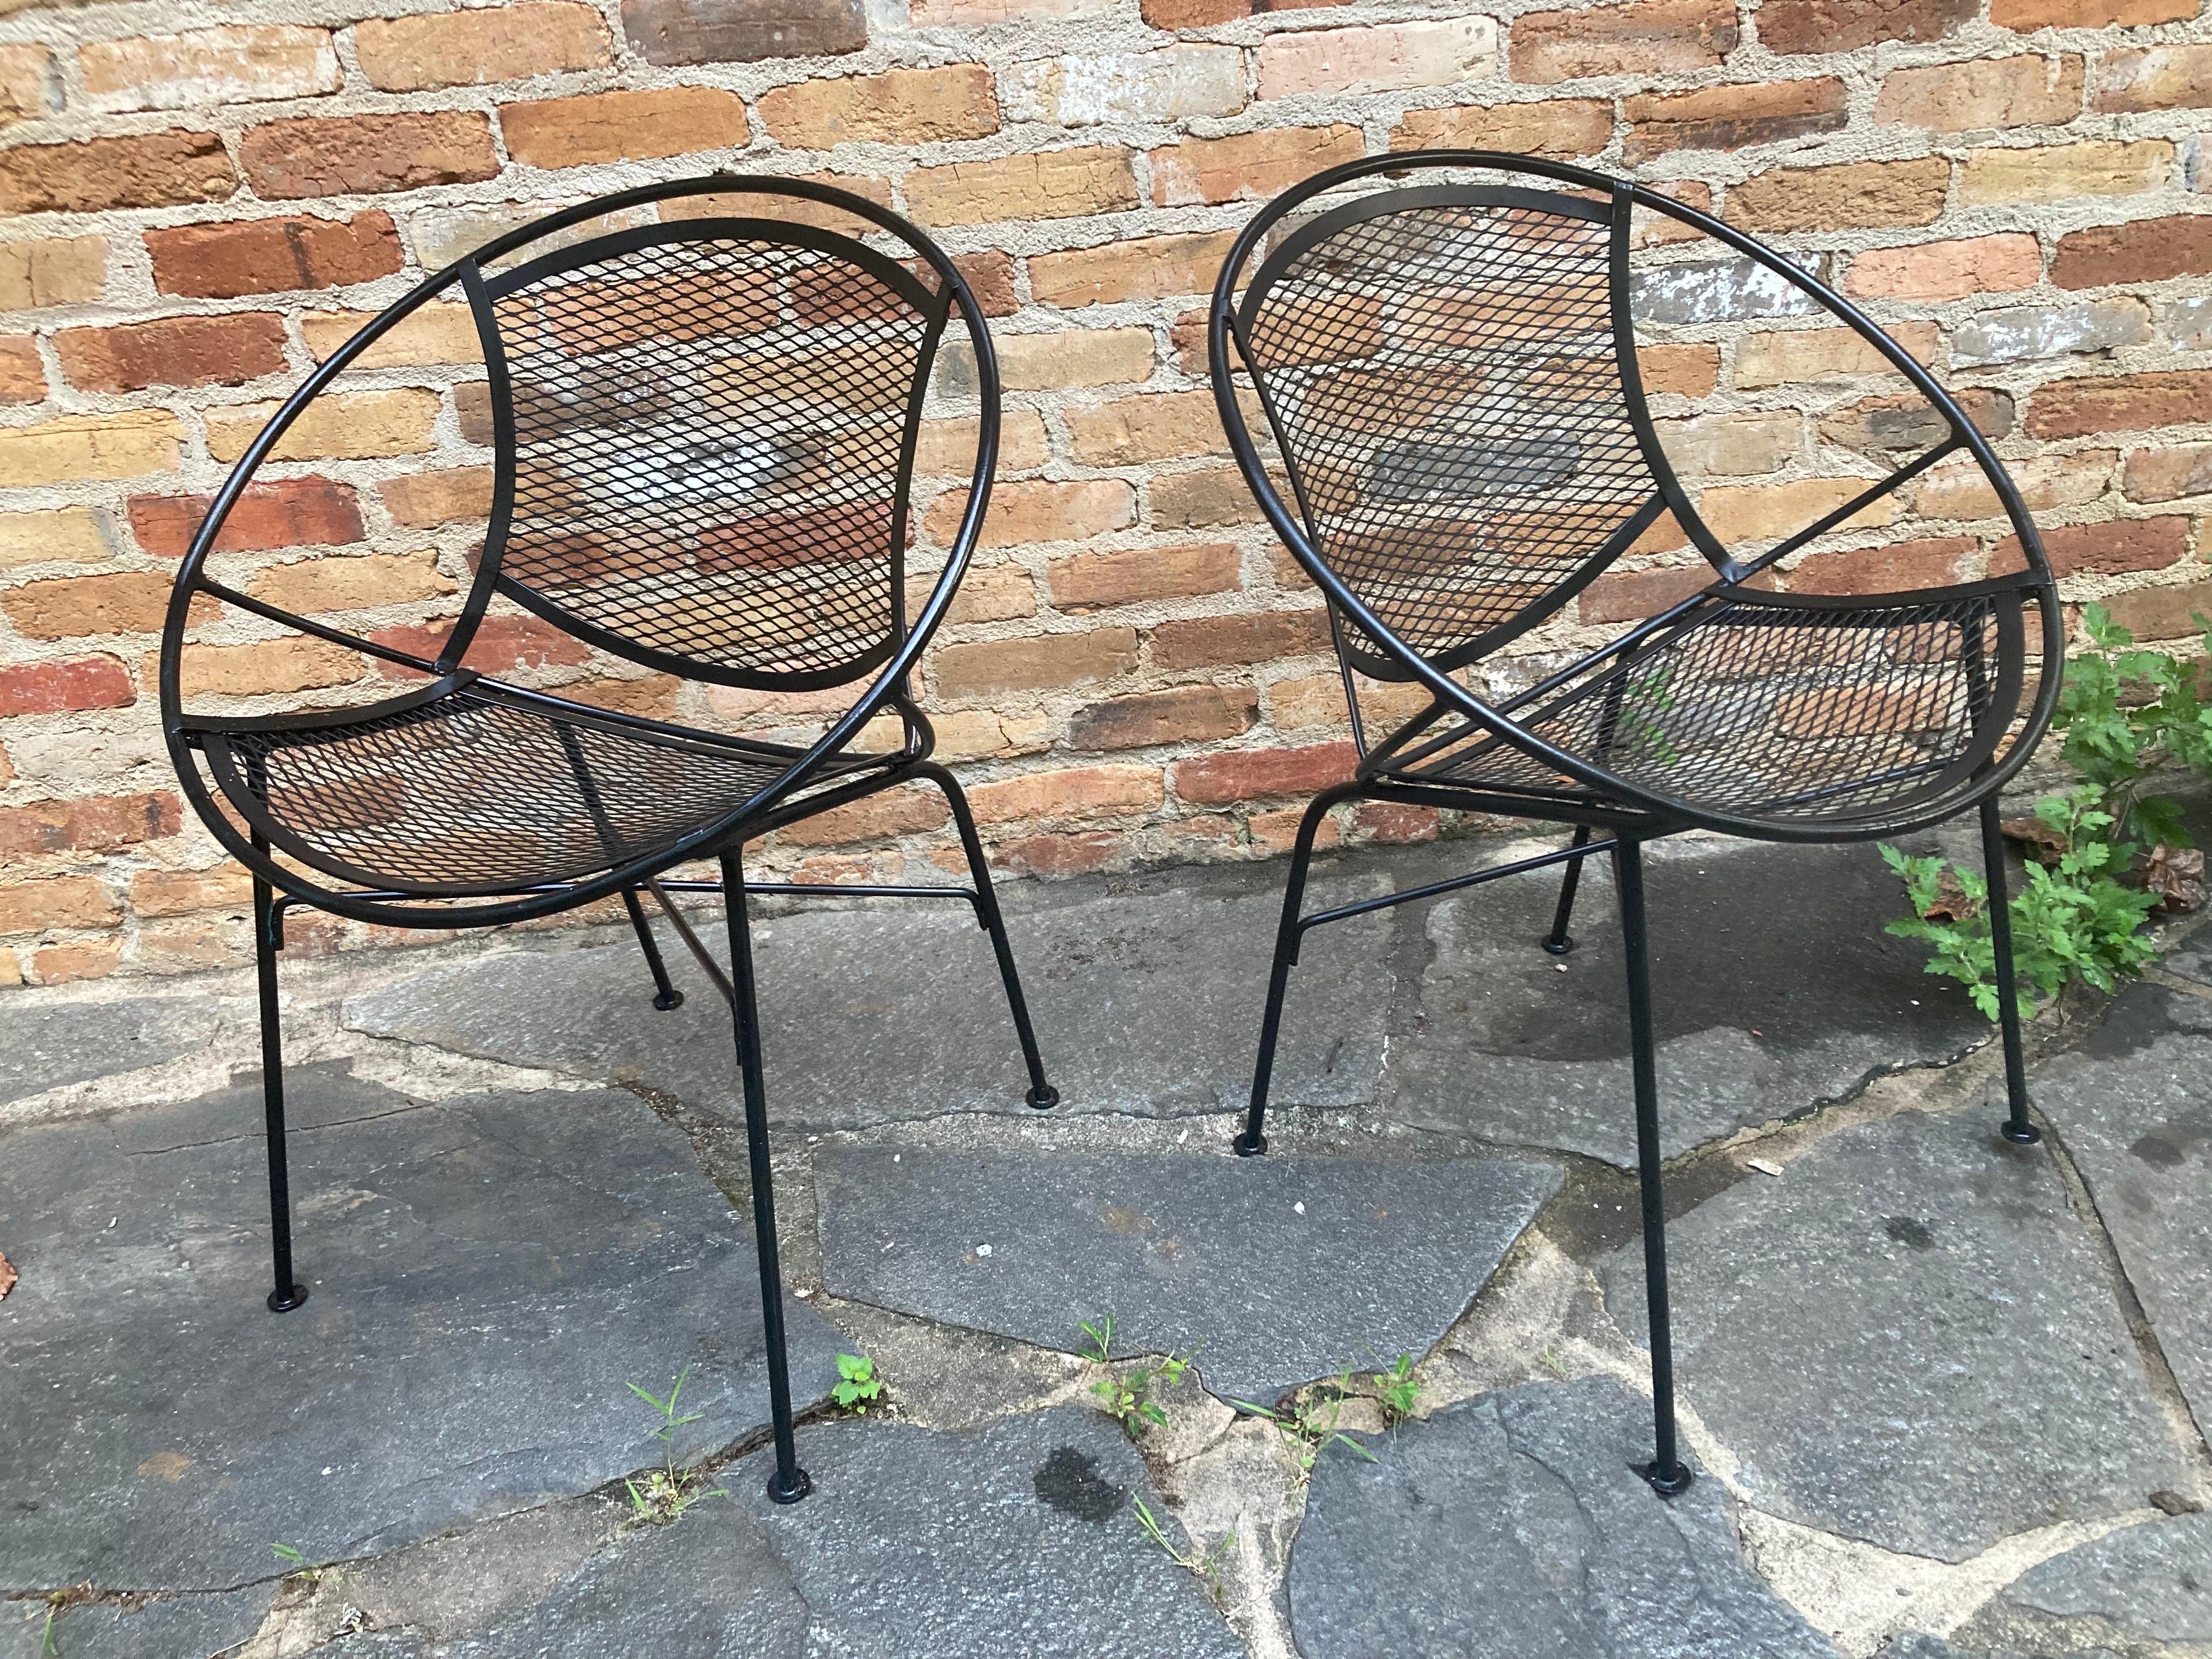 Paire de chaises de salon en fer forgé noir satiné, conçues par Maurizio Tempestini et fabriquées par John Salterini.
pas de marque de fabrique
plusieurs séries disponibles

30,25ʺW × 27ʺD × 27,5ʺH

expédition depuis athènes, ga